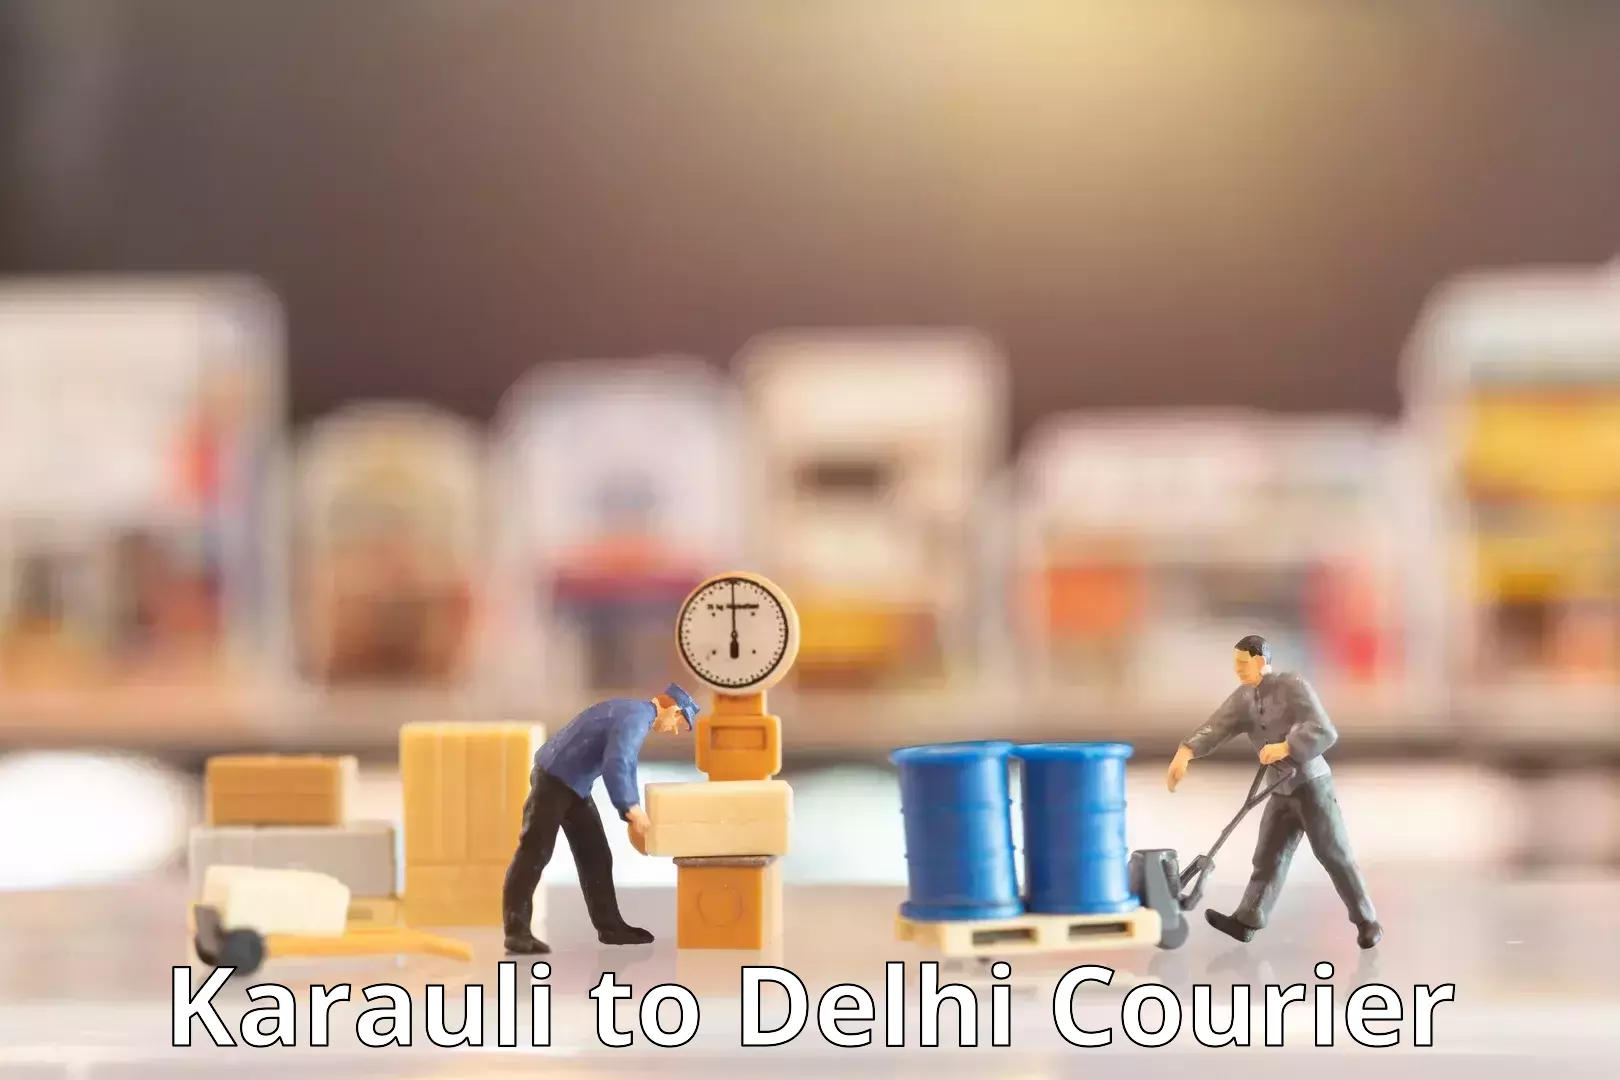 Courier service comparison Karauli to Jamia Hamdard New Delhi